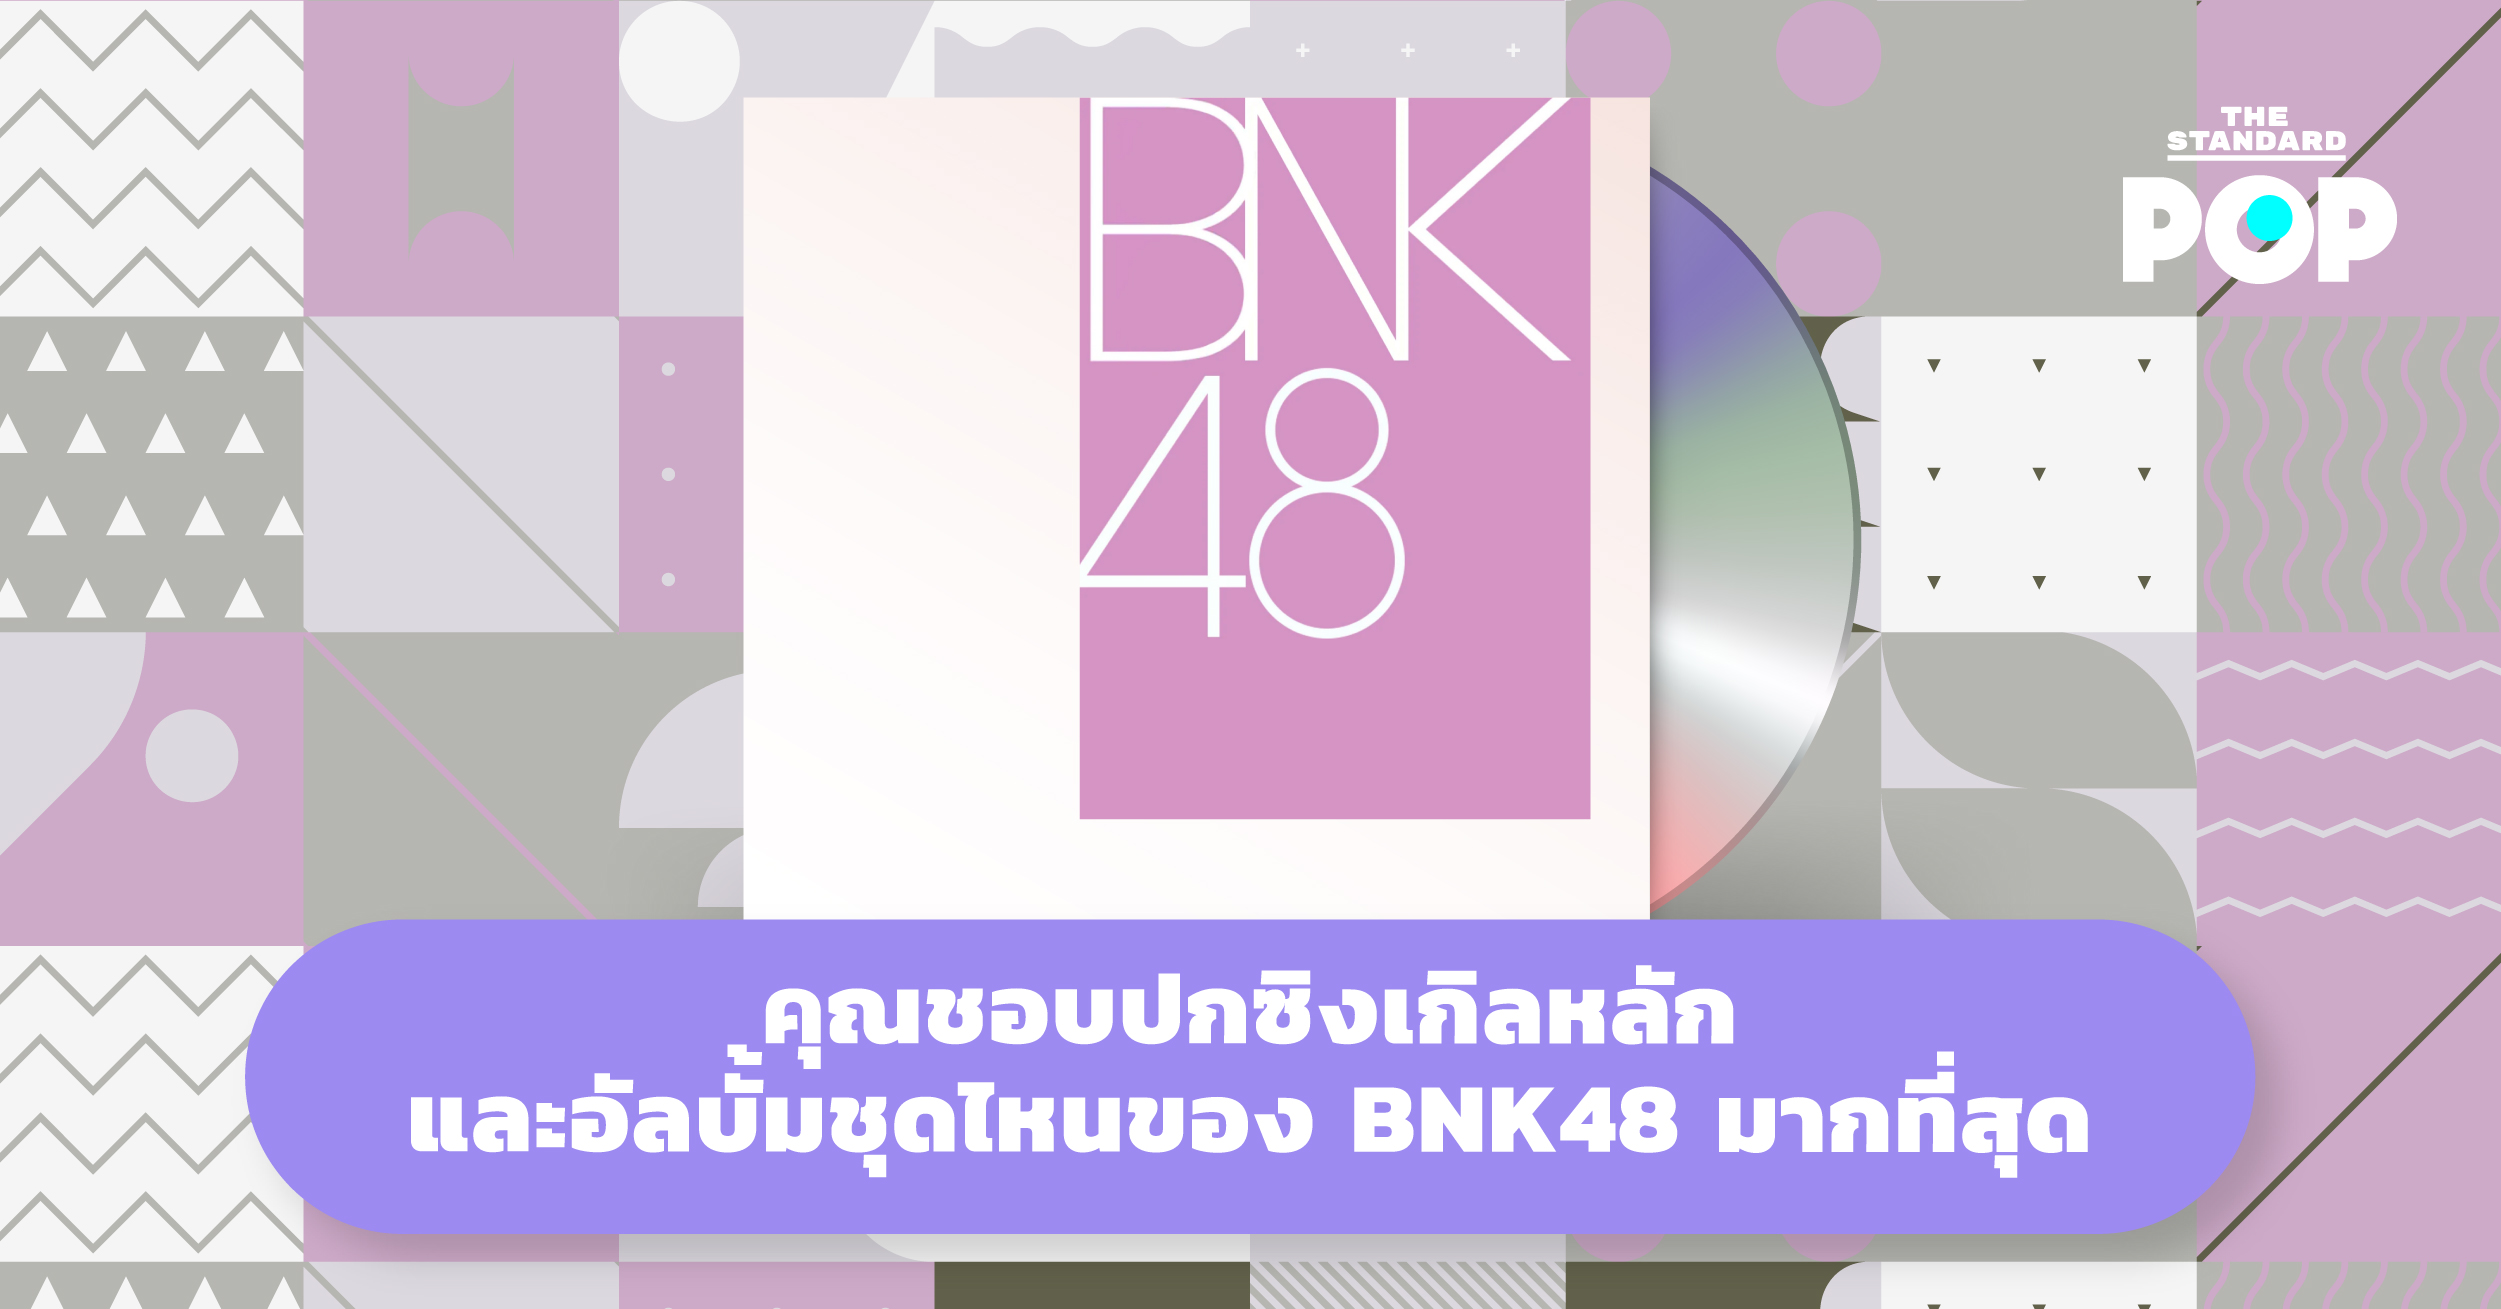 คุณชอบปกซิงเกิลหลักและอัลบั้มชุดไหนของ BNK48 มากที่สุด